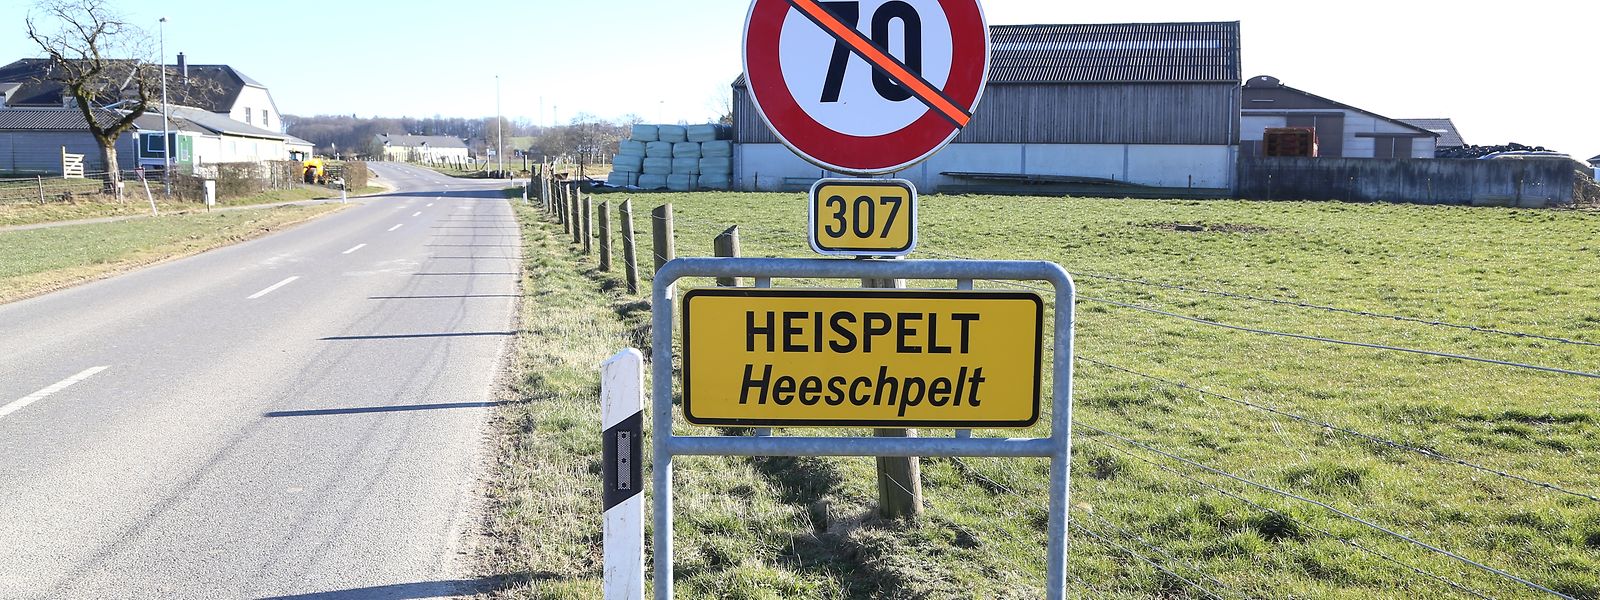 Ce crime violent a été commis à Heispelt, non loin de la frontière belge